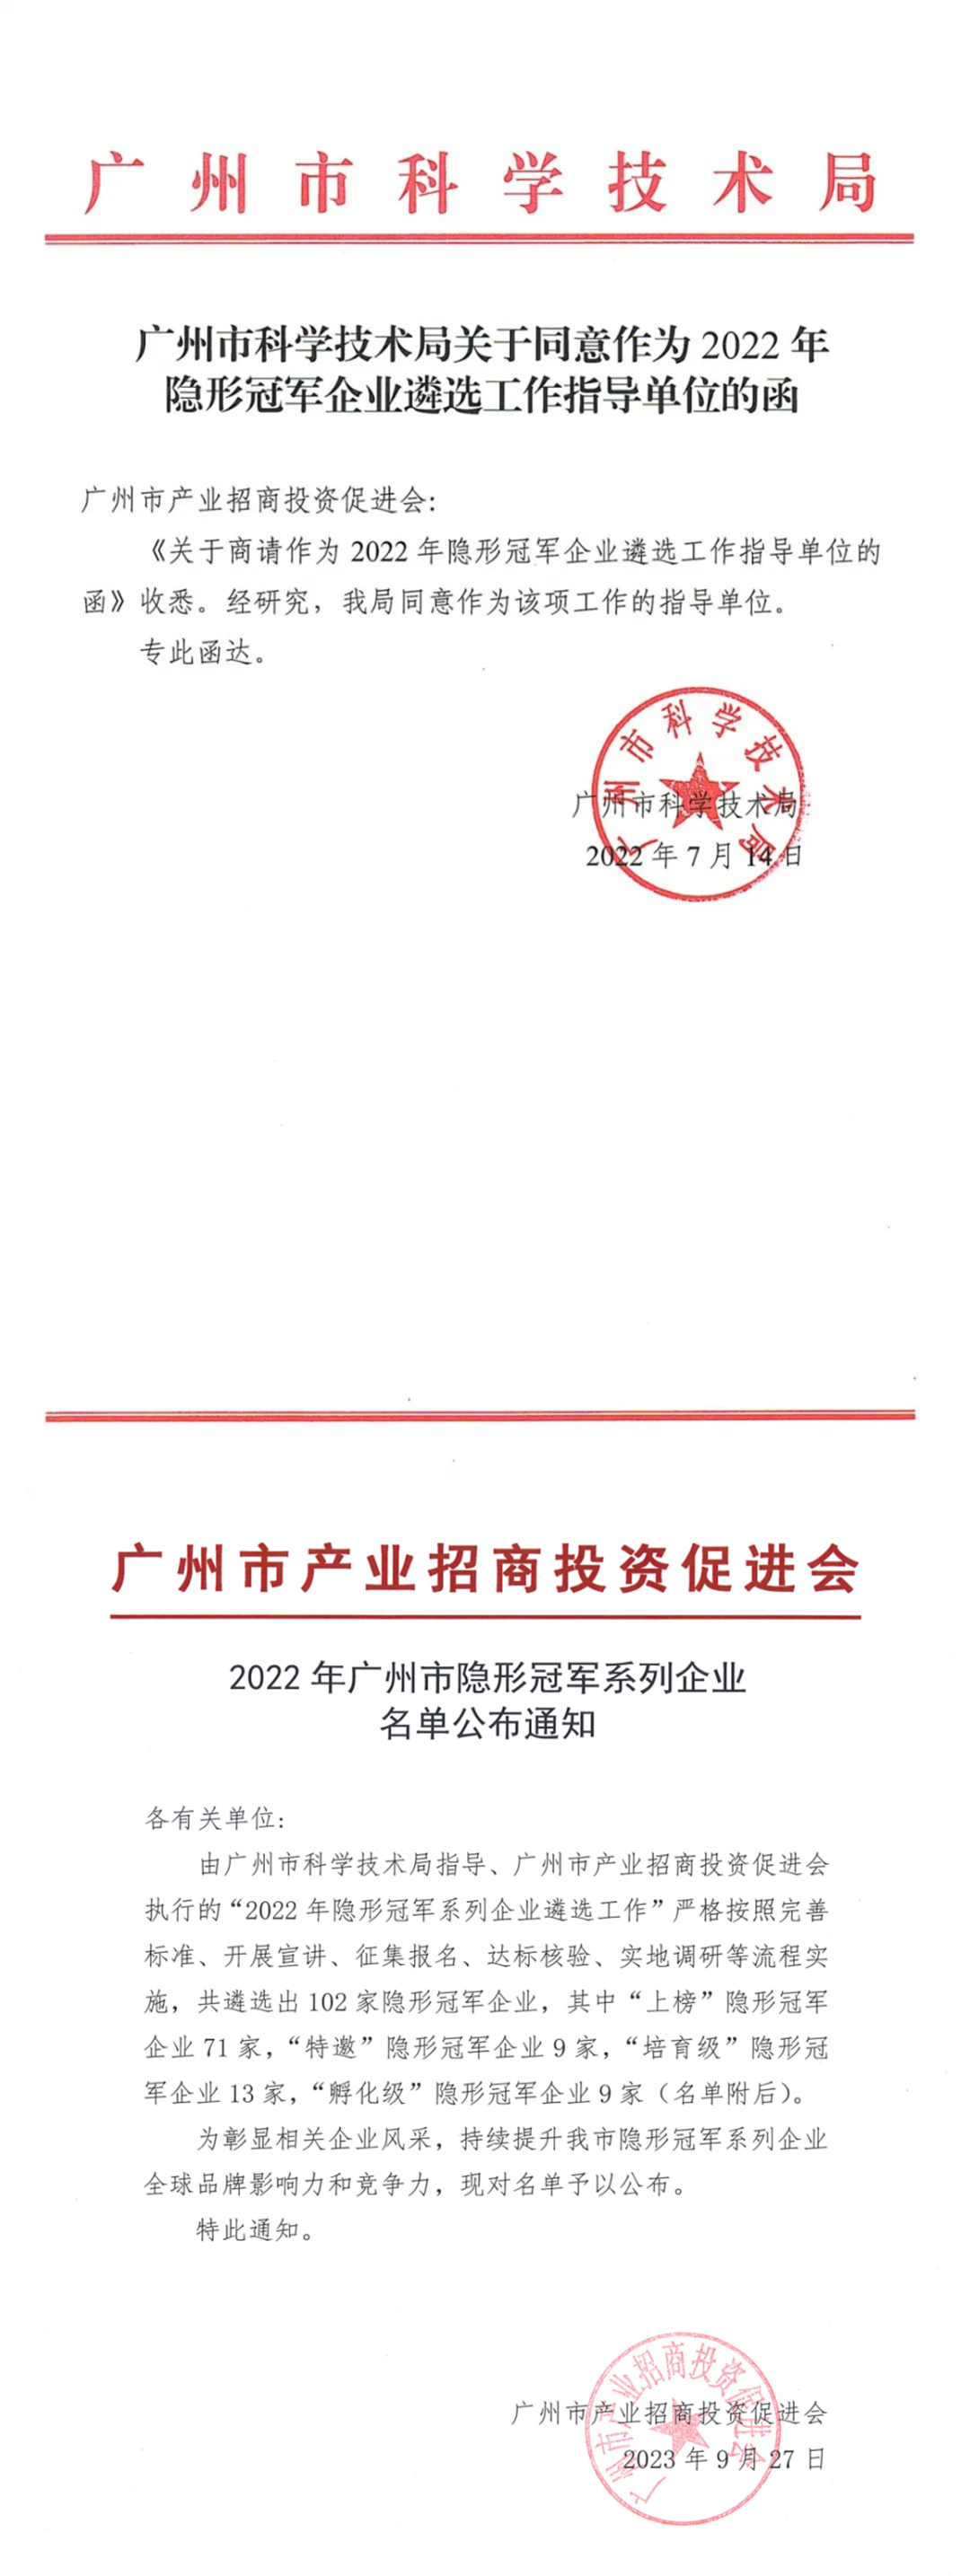 再获殊荣，k8凯发和集团公司获“2022年广州市隐形冠军企业”称号